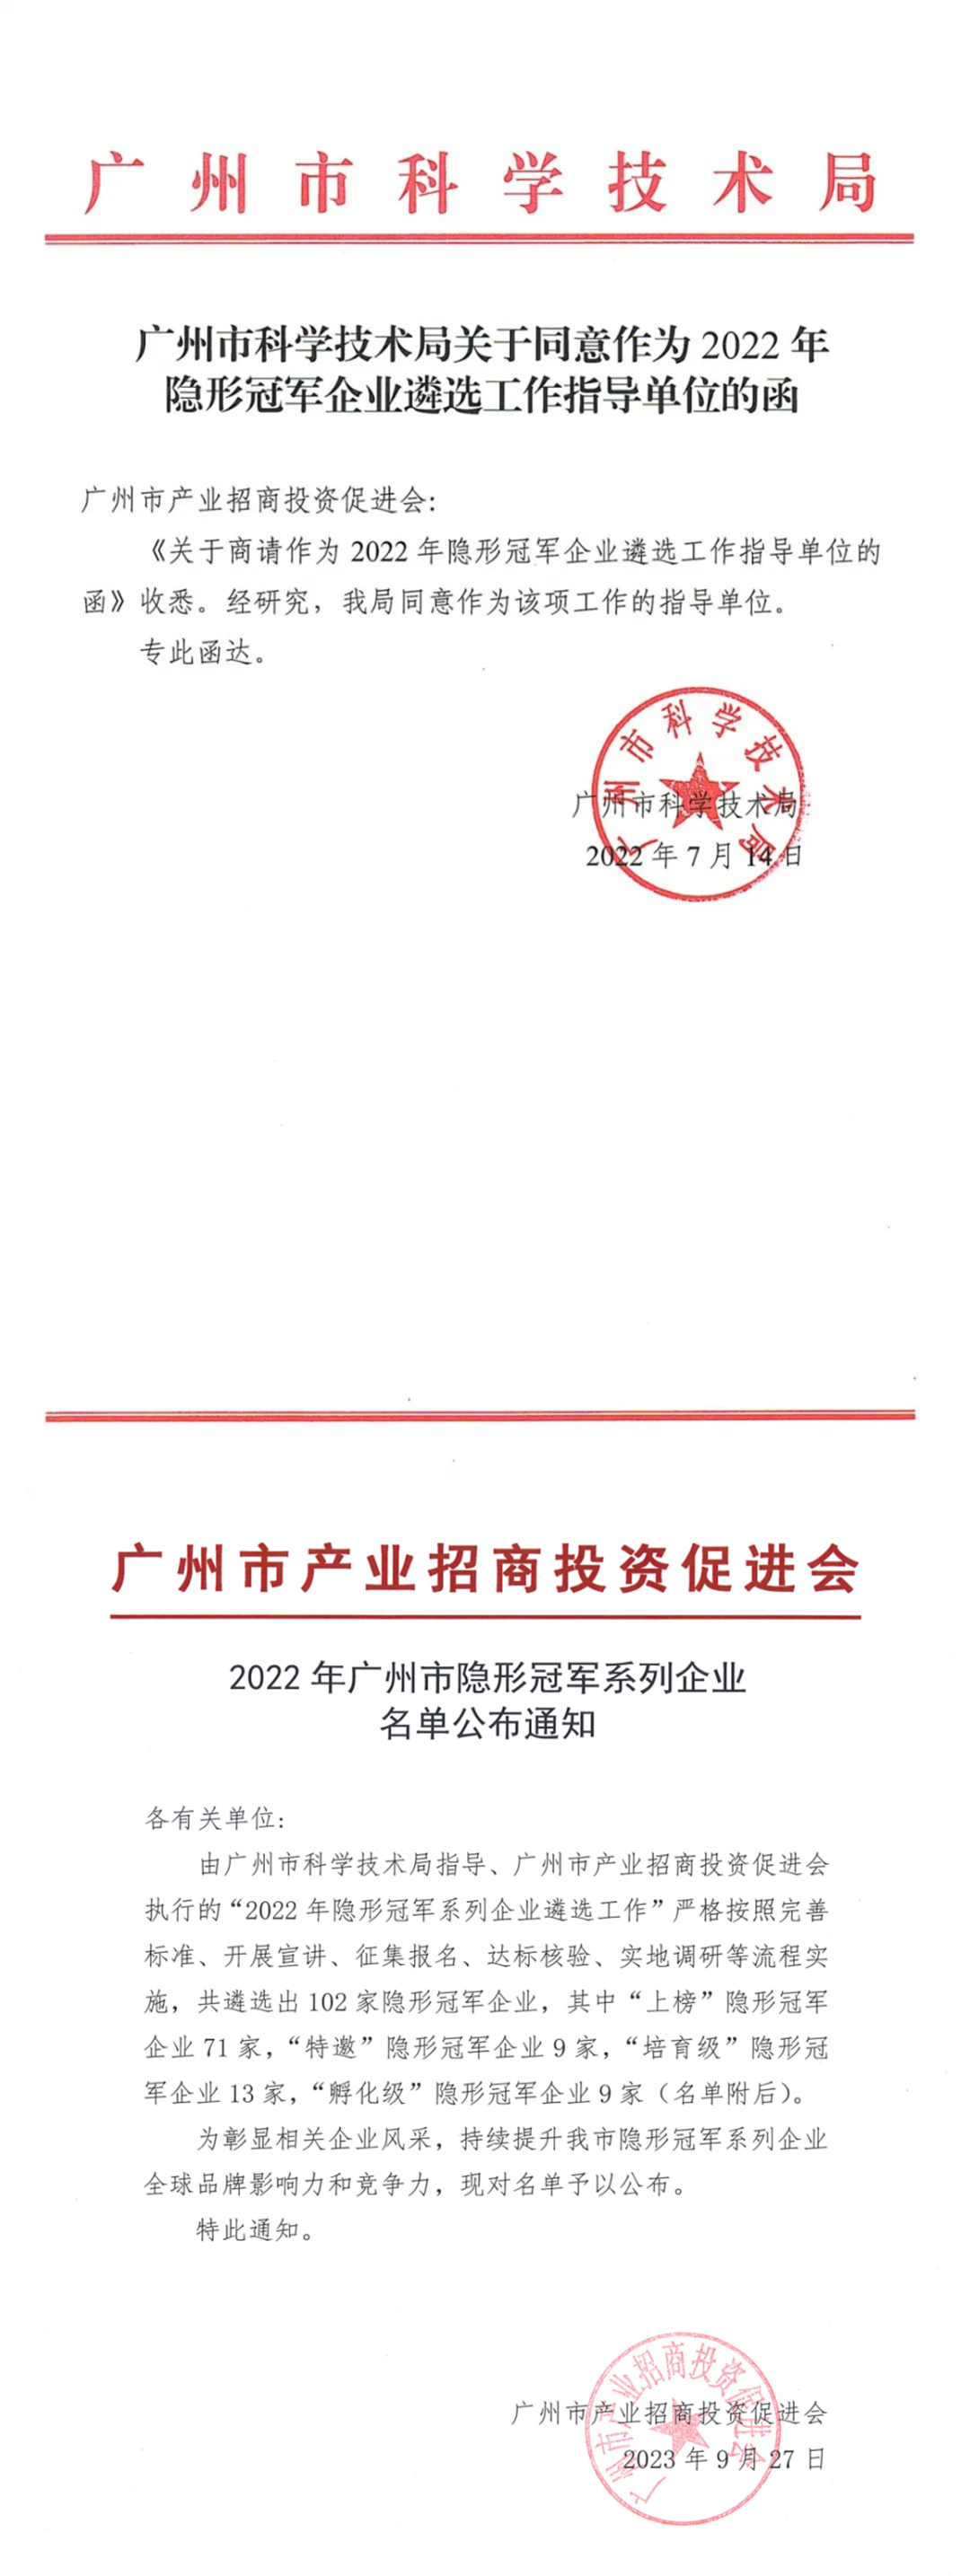 再获殊荣，k8凯发和集团公司获“2022年广州市隐形冠军企业”称号